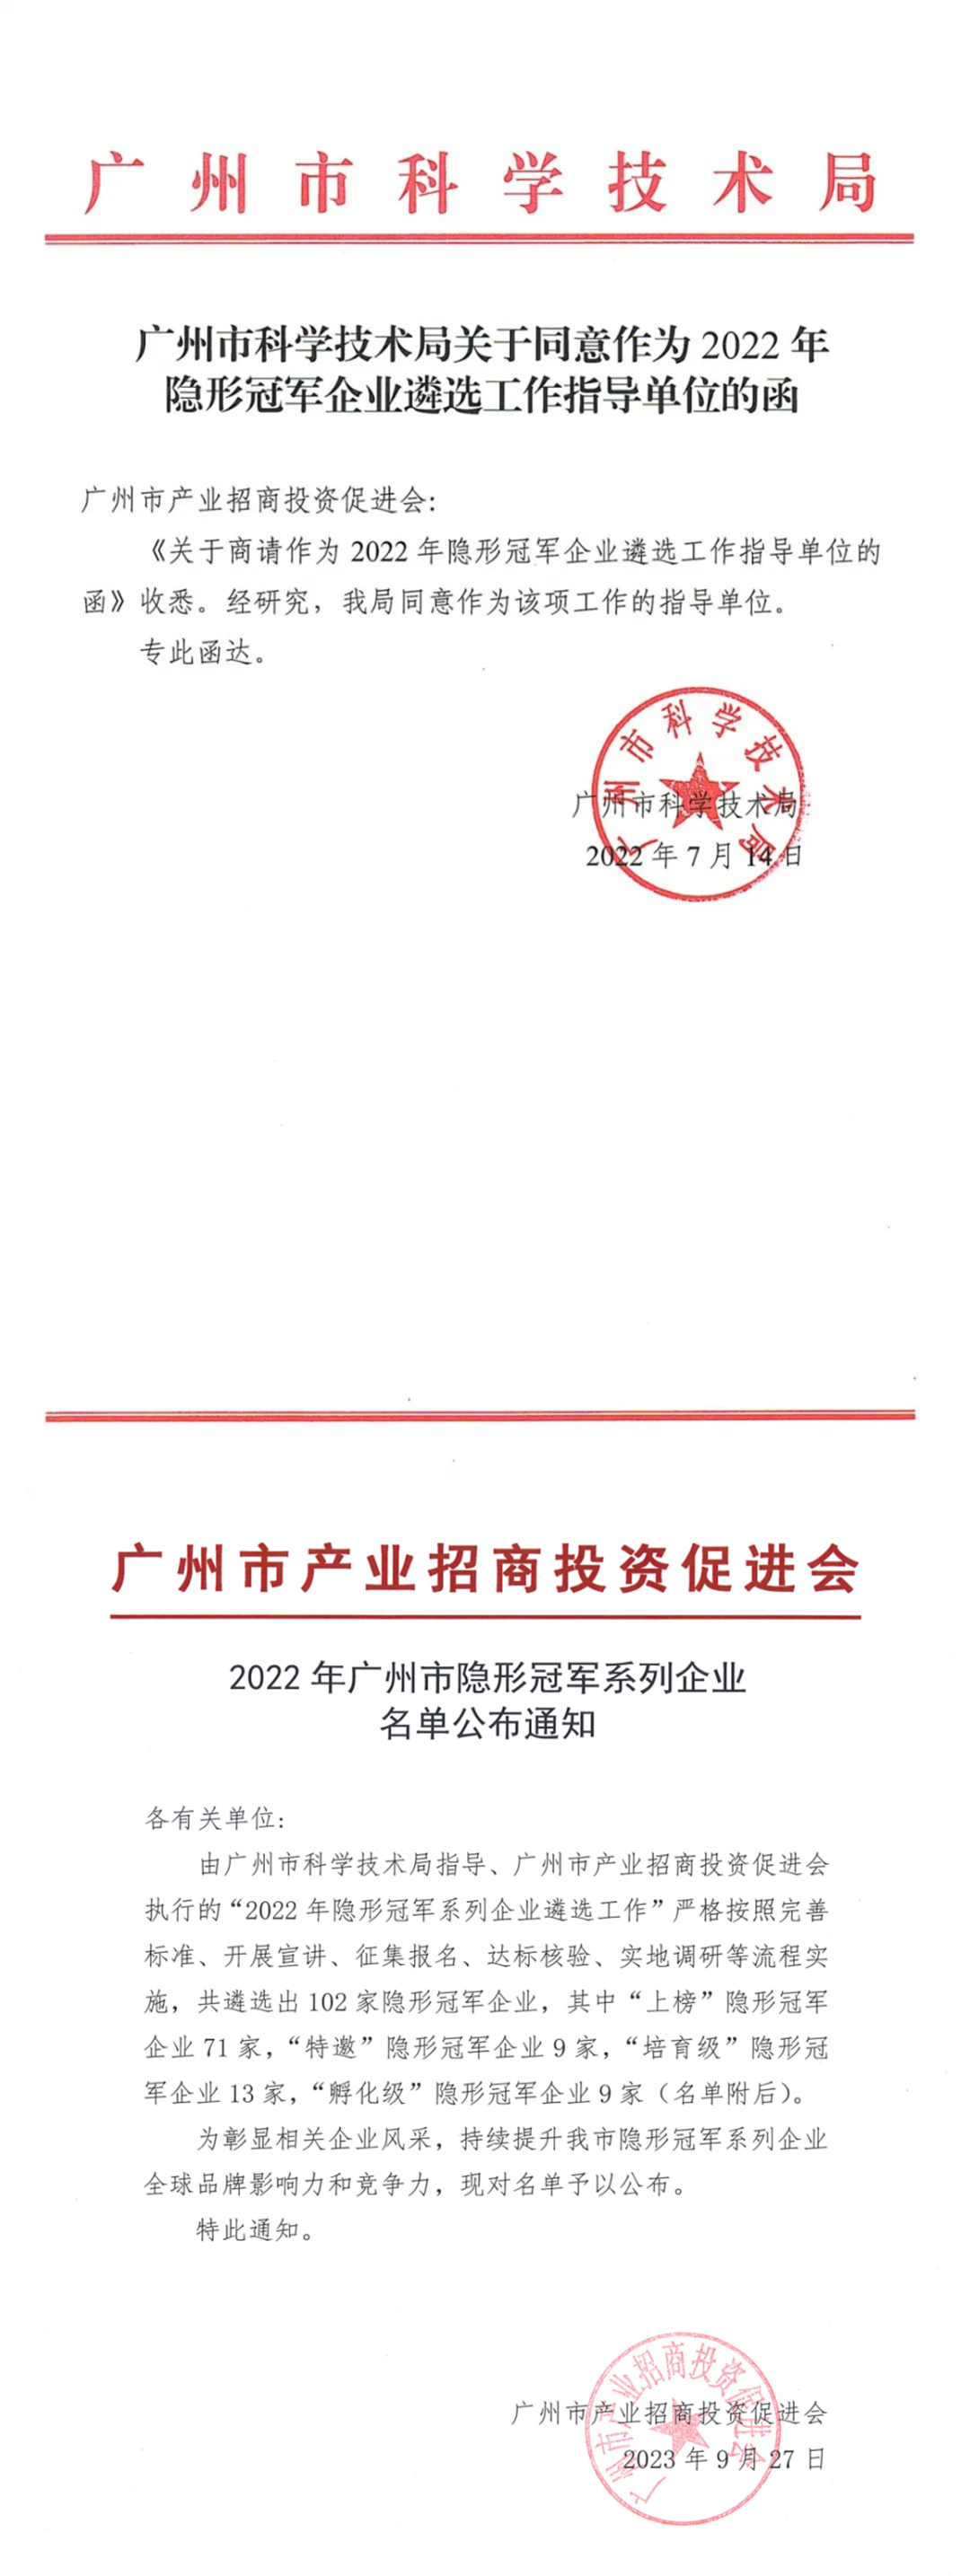 再获殊荣，k8凯发和集团公司获“2022年广州市隐形冠军企业”称号